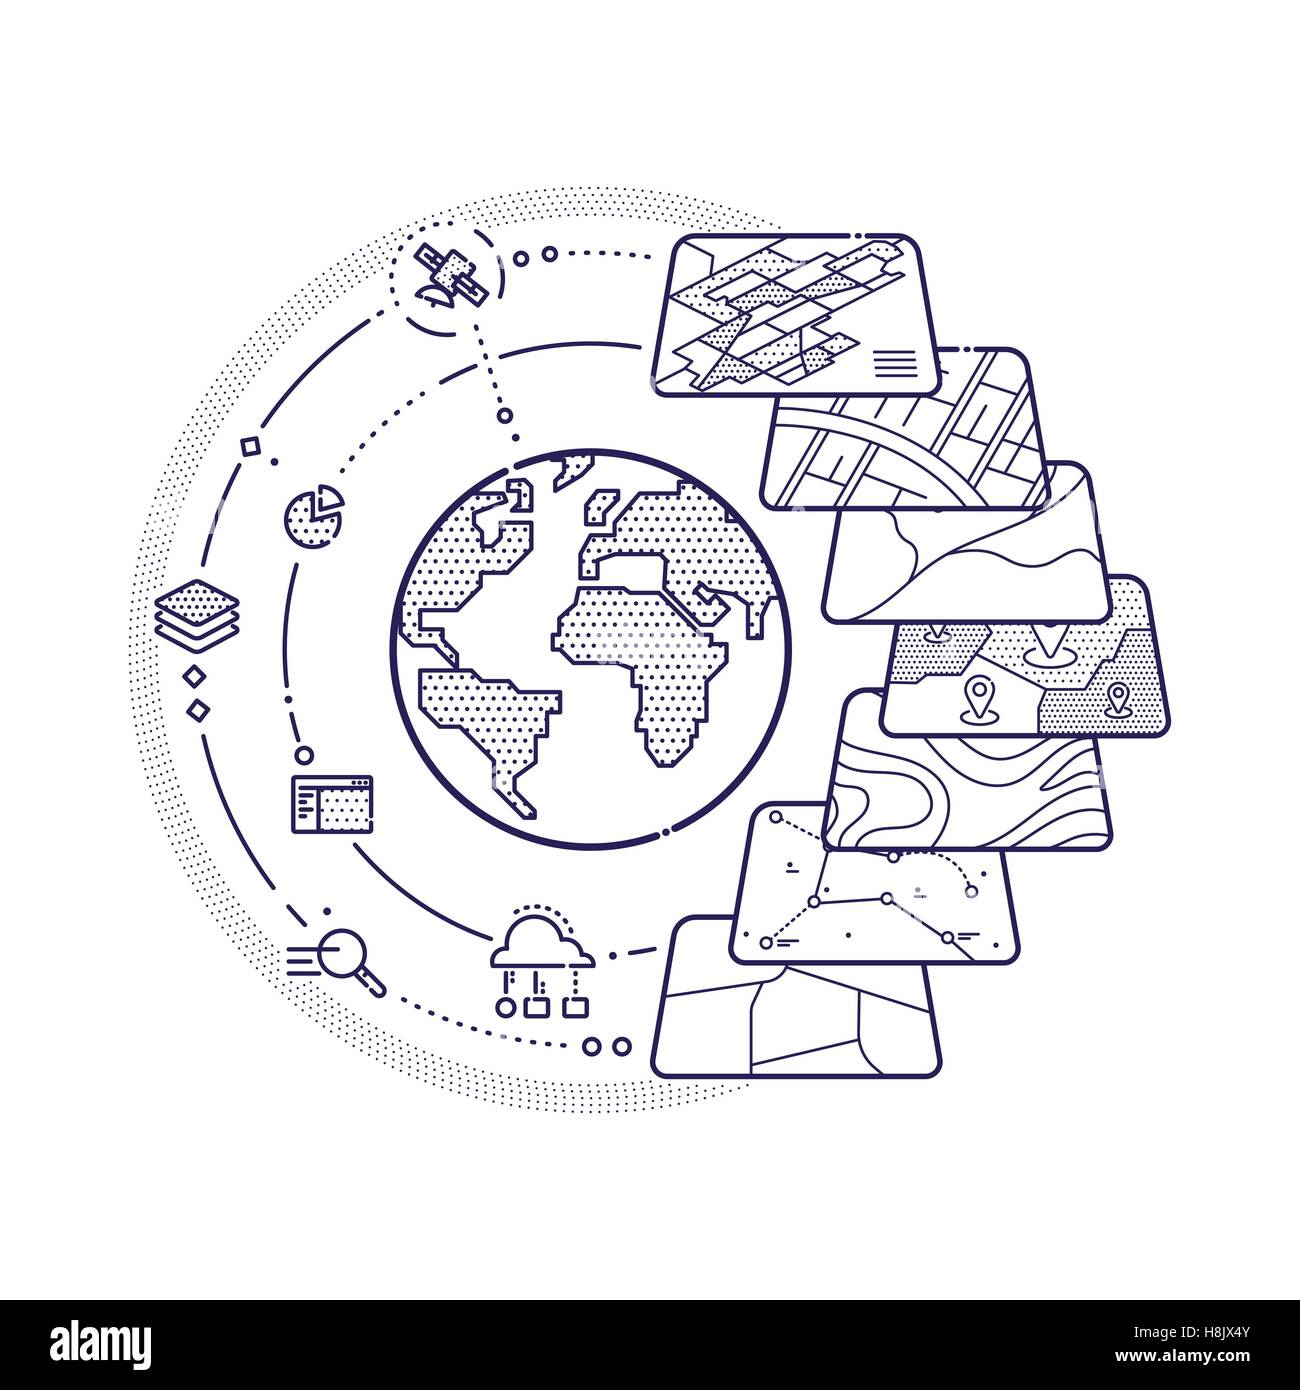 Vektor-Illustration von GIS Geodaten Schichten Konzept für Business-Analyse, geografische Informationen Systemdesign, Ikonen, Liner Stock Vektor